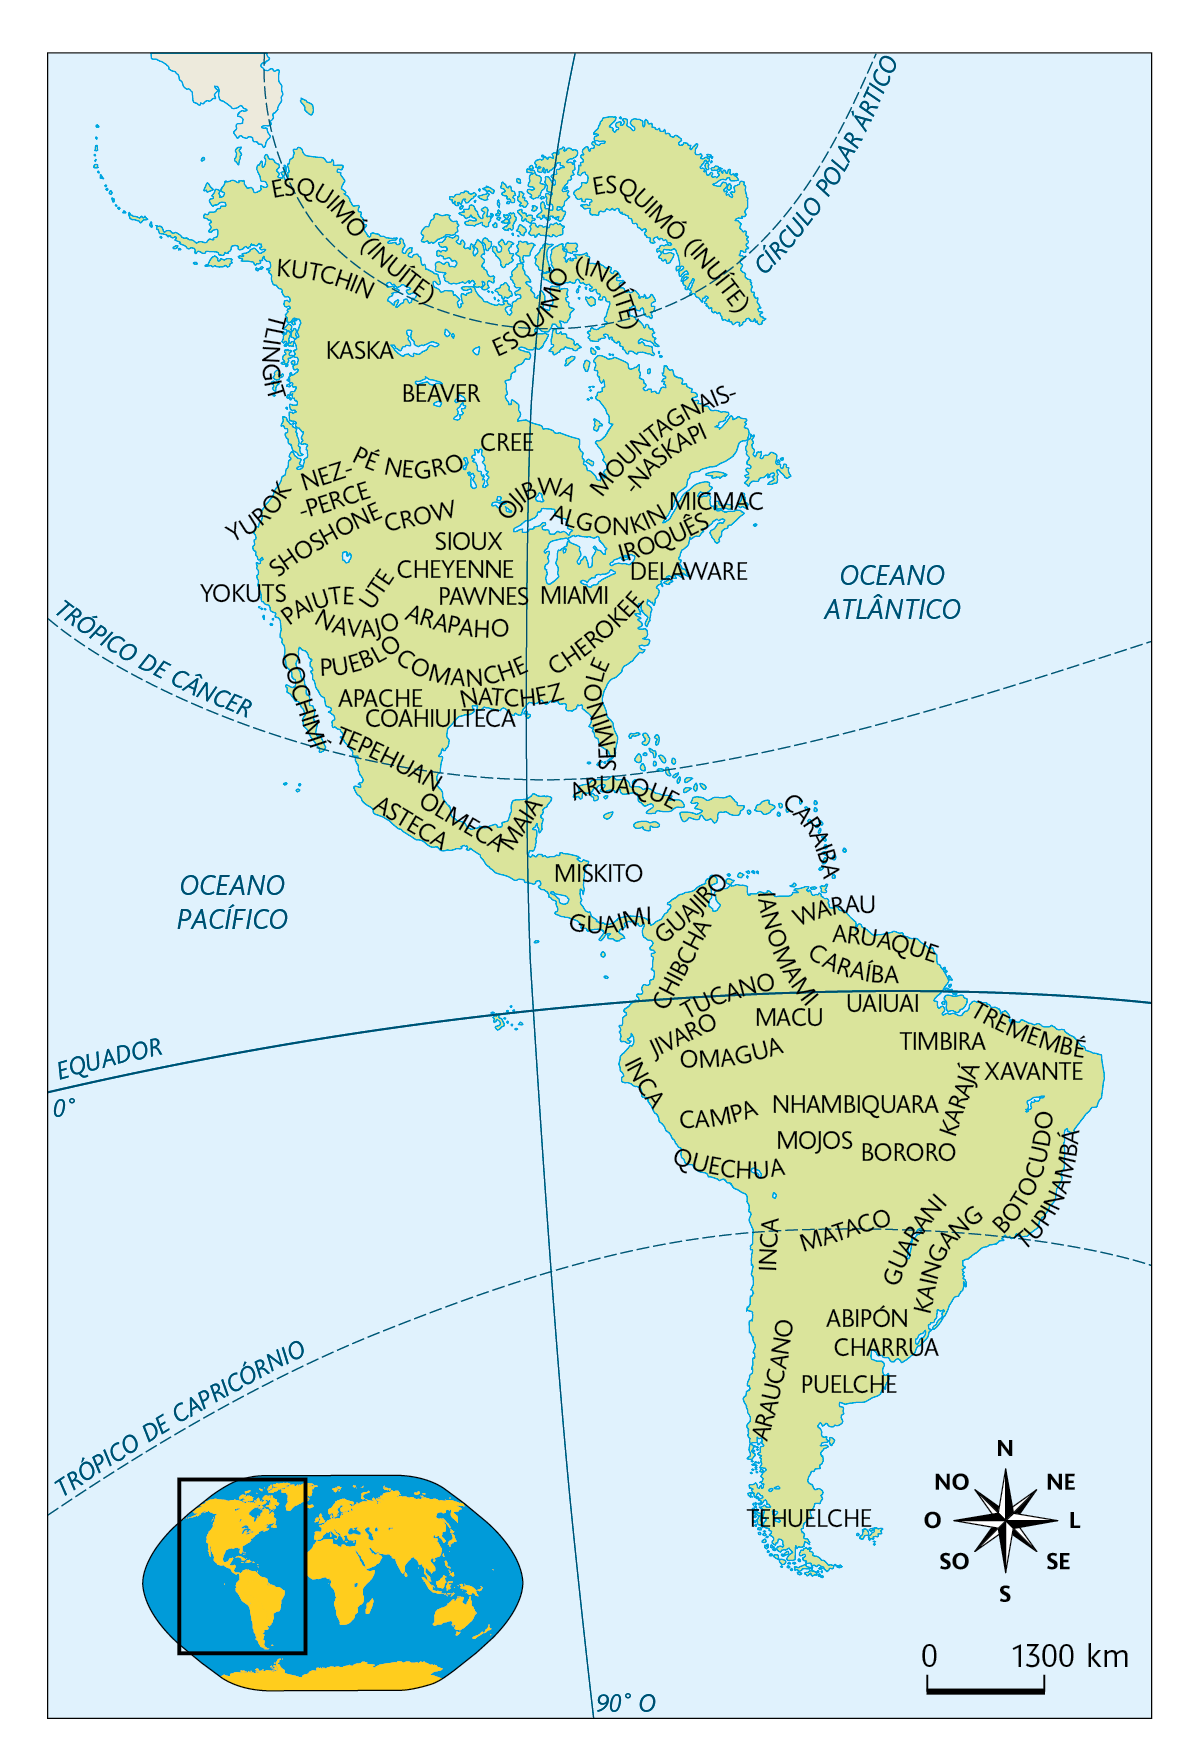 Mapa. Povos da América (séculos 10-15). Mapa territorial da América delimitando os povos e a região onde habitavam: Povos da América do Norte: ESQUIMÓ (INUÍTE), KUTCHIN, TLINGIT, KASKA, BEAVER, YUROK, NEZ-PERCE, PÉ NEGRO, CREE, MOUNTAGNAIS-NASKAPI, SHOSHONE, YOKUTS, CROW, SIOUX, OJIBWA, ALGONKIN, MICMAC, IROQUÊS, DELAWARE, MIAMI, CHEROKEE, CHEYENNE, PAWNES, ARAPAHO, UTE, PAIUTE, NAVAJO, COCHIMÍ, PUEBLO, APACHE, COAHIULTECA, COMANCHE, NATCHEZ, SEMINOLE, TEPEHUAN, OLMECA, ASTECA, MAIA. Povos da América Central:  GUAIMI, MISKITO, ARUAQUE, CARAIBA. Povos da América do Sul: GUAJIRO, CHIBCHA, TUCANO, JIVARO, INCA, IANOMAMI, WARAU, ARUAQUE, CARAÍBA, UAIUAI, TREMEMBÉ, TIMBIRA, MACU, OMAGUA, XAVANTE, KARAJÁ, NHAMBIQUARA, CAMPA, QUECHUA, MOJOS, BORORO, BOTOCUDO, TUPINAMBÁ, MATACO, GUARANI, KAINGANG, ABIPÓN, CHARRUA, ARAUCANO, PUELCHE, TEHUELCHE. Na parte inferior, à esquerda, planisfério destacando a América. Ao lado, rosa dos ventos e escala de 1300 quilômetros por centímetro.